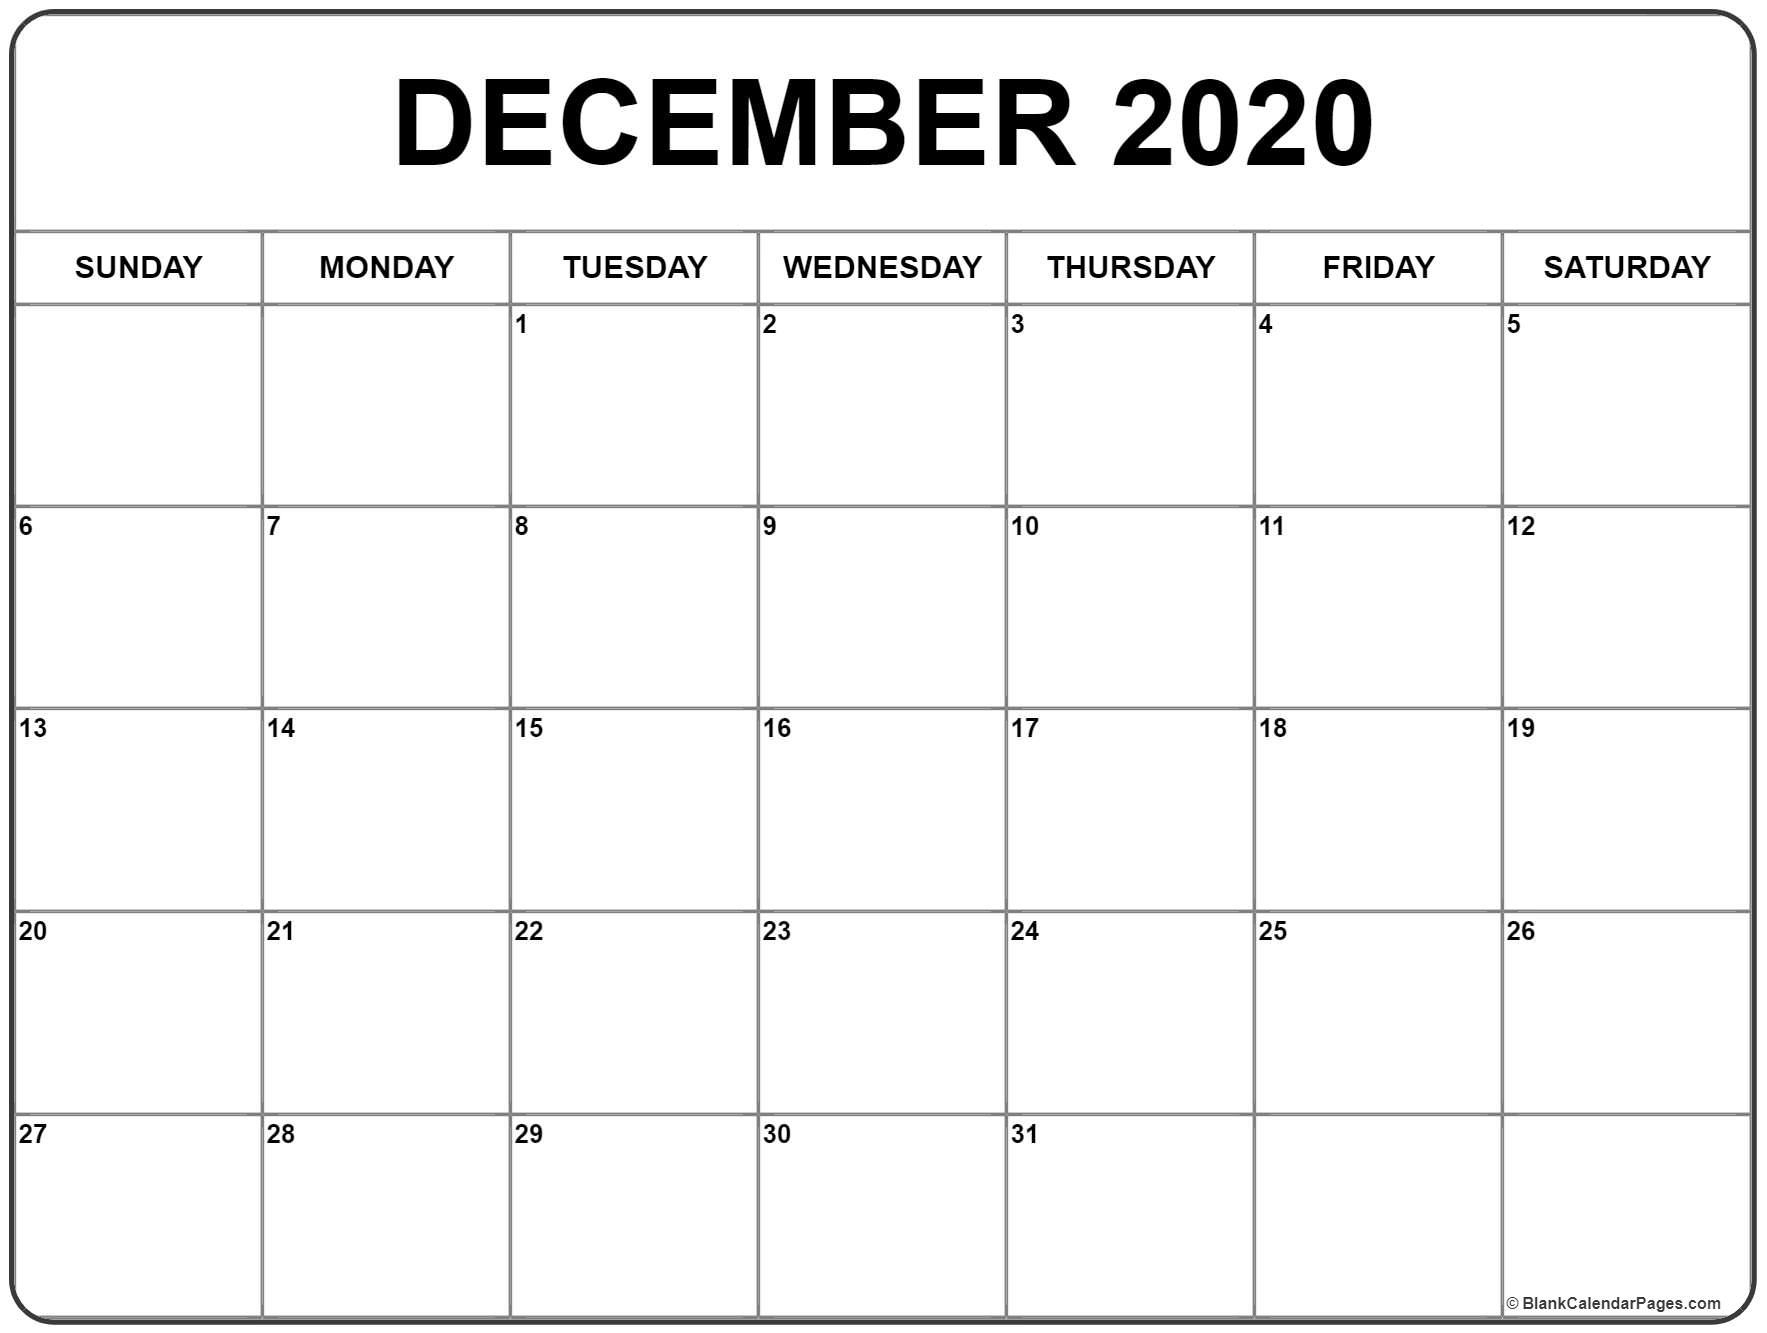 Vacation Schedule Template December 2020 Calendar 2020 2